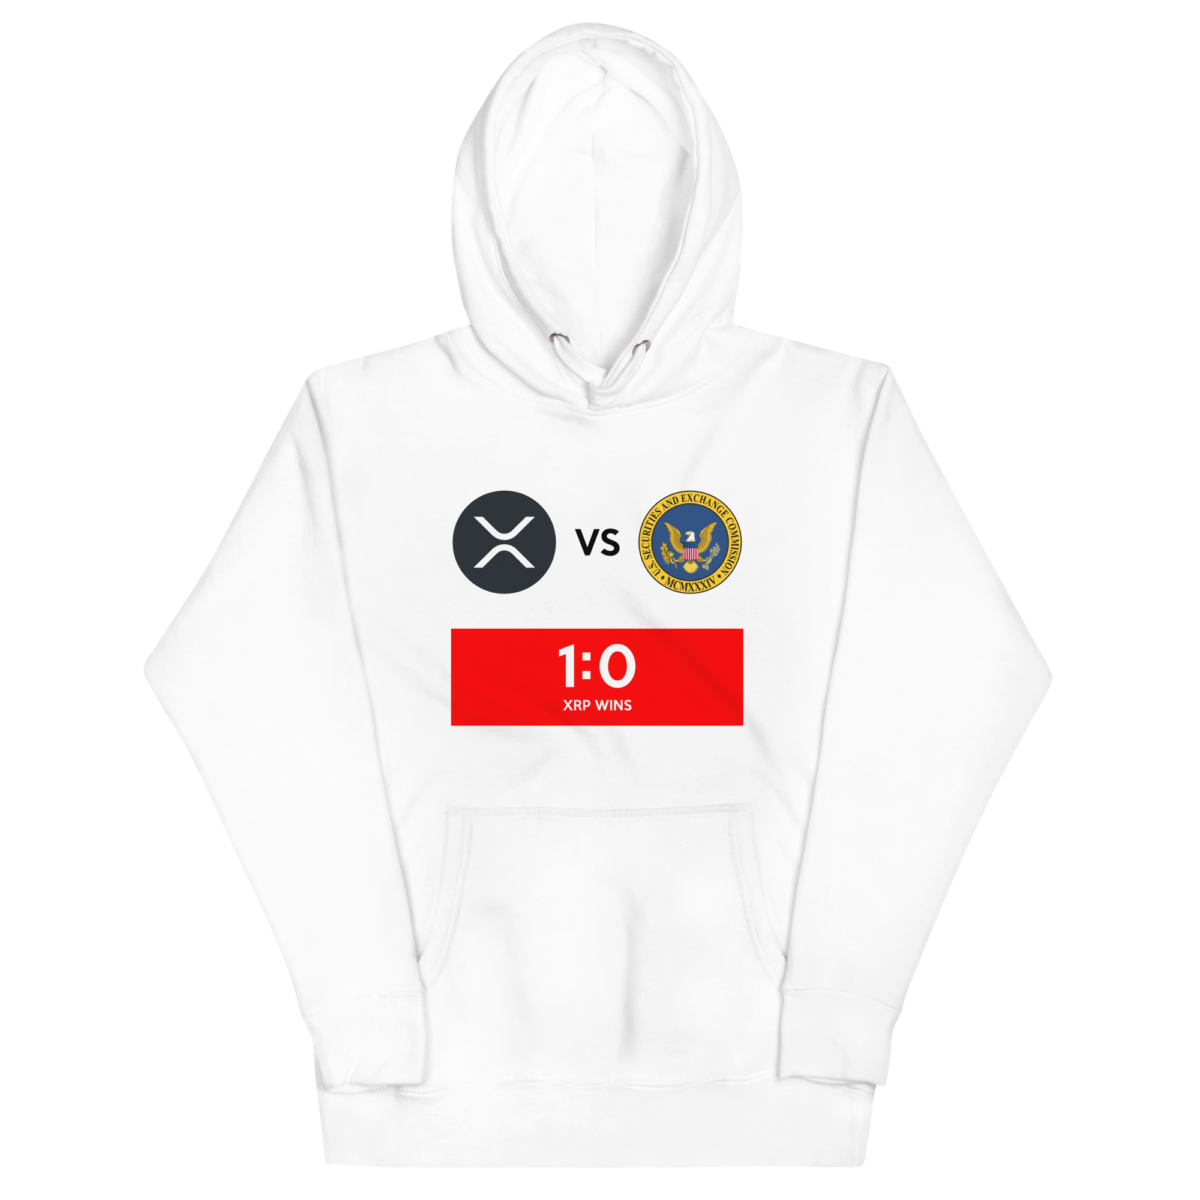 unisex premium hoodie white front 632b712ee5853 - XRP vs SEC Hoodie